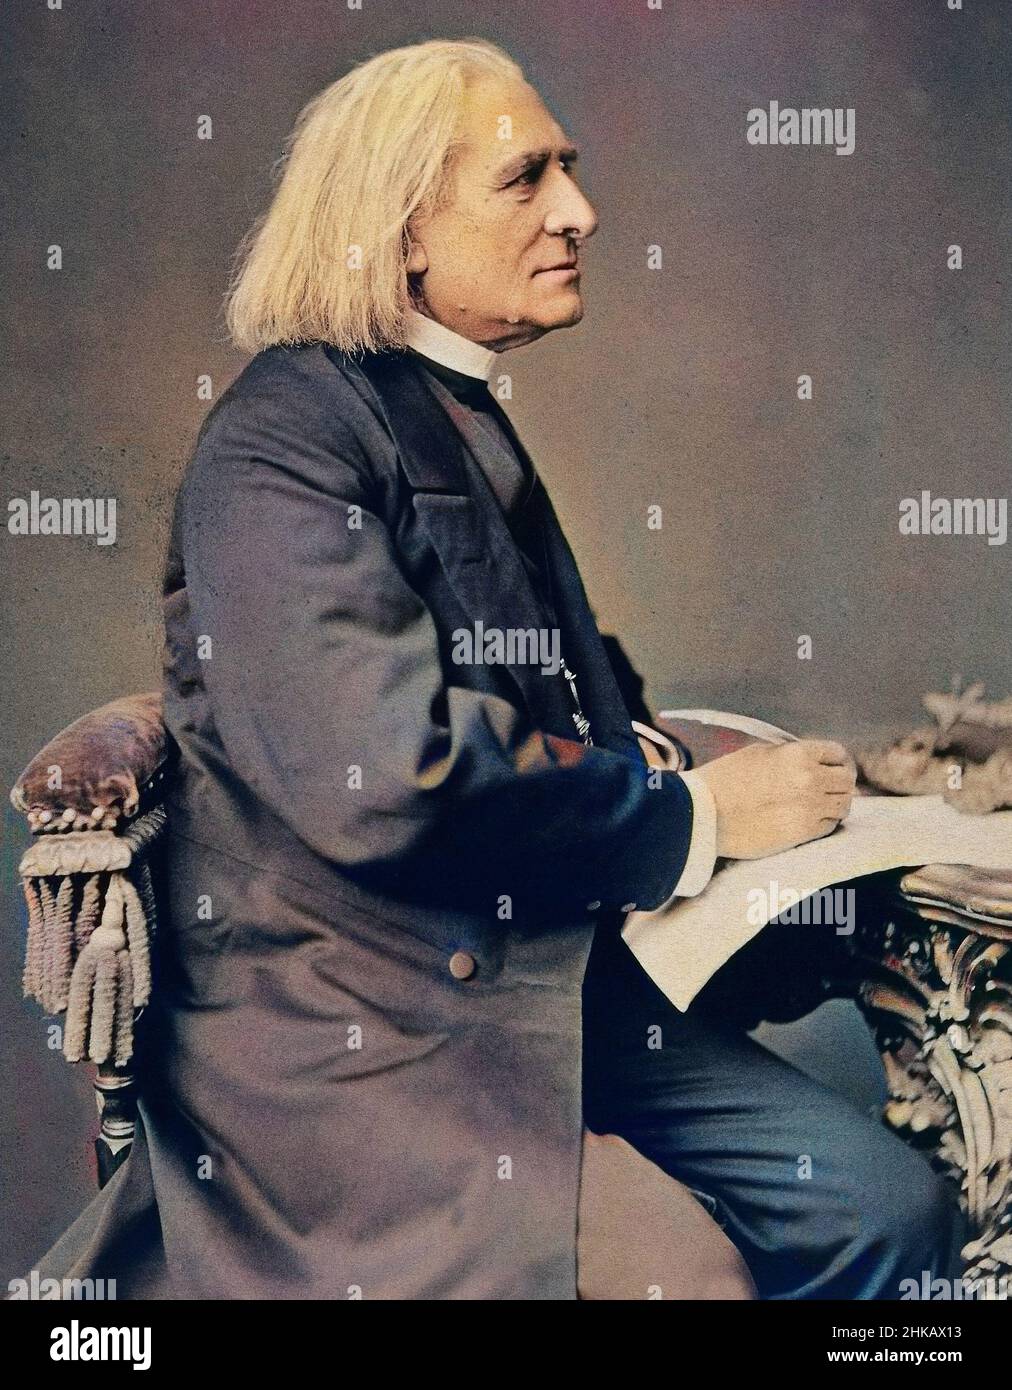 Franz Liszt, compositeur, pianiste et chef d'orchestre hongrois Banque D'Images